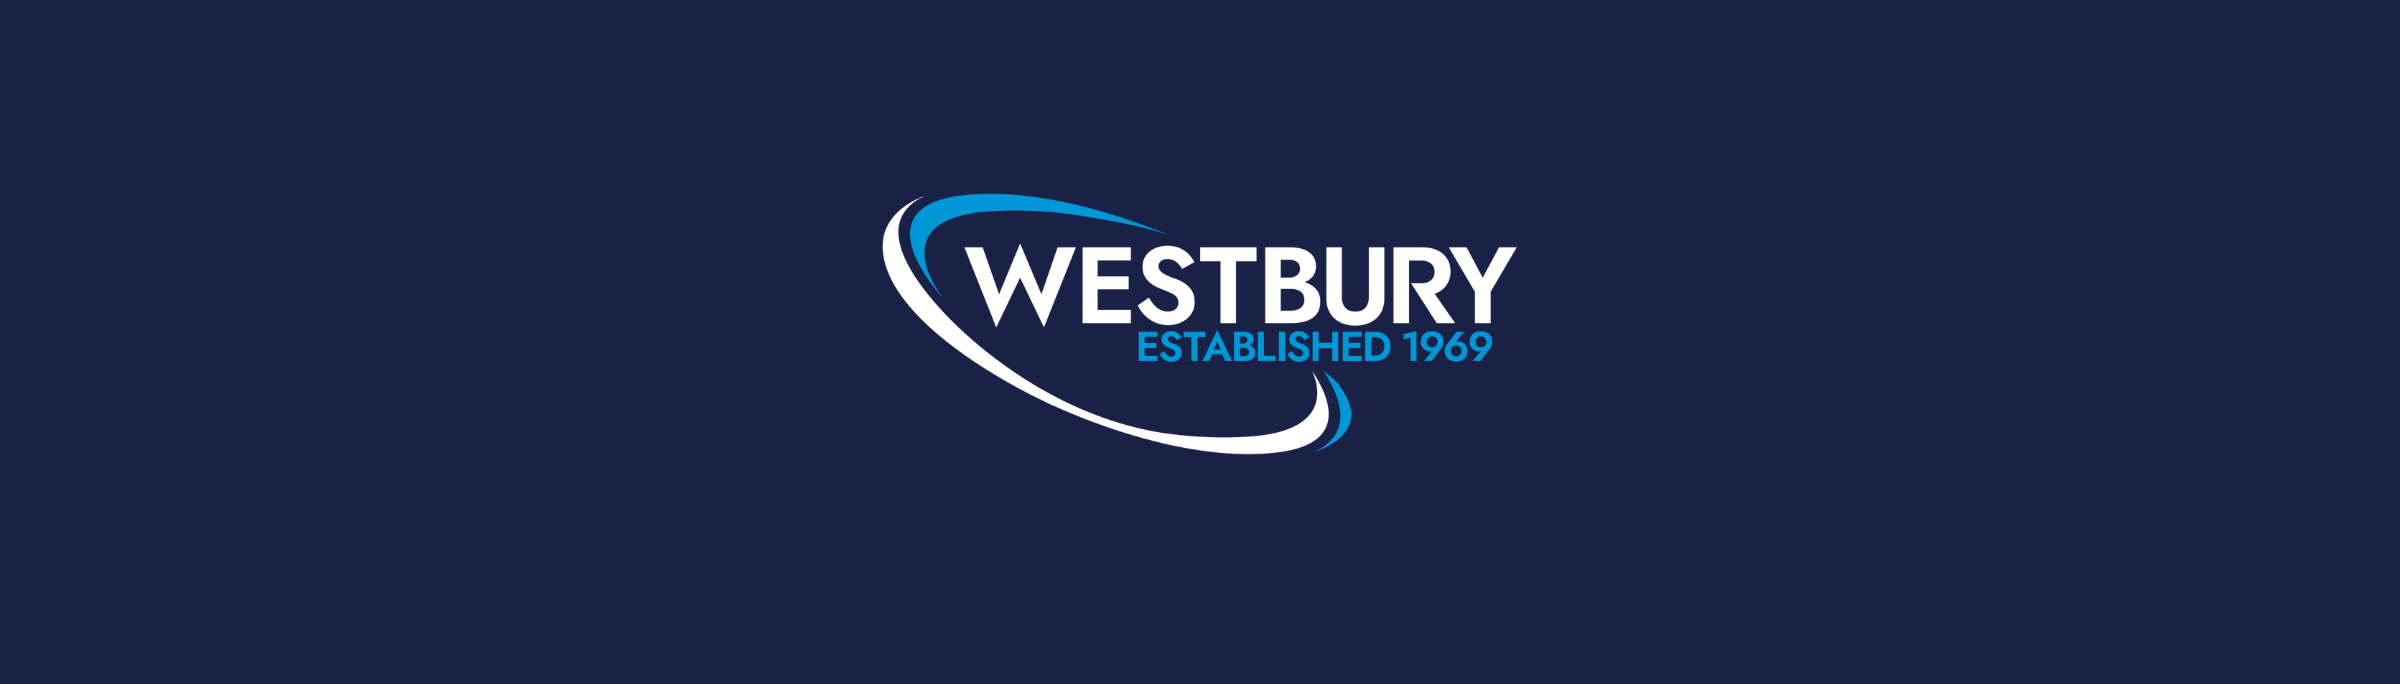 Westbury brand launch banner